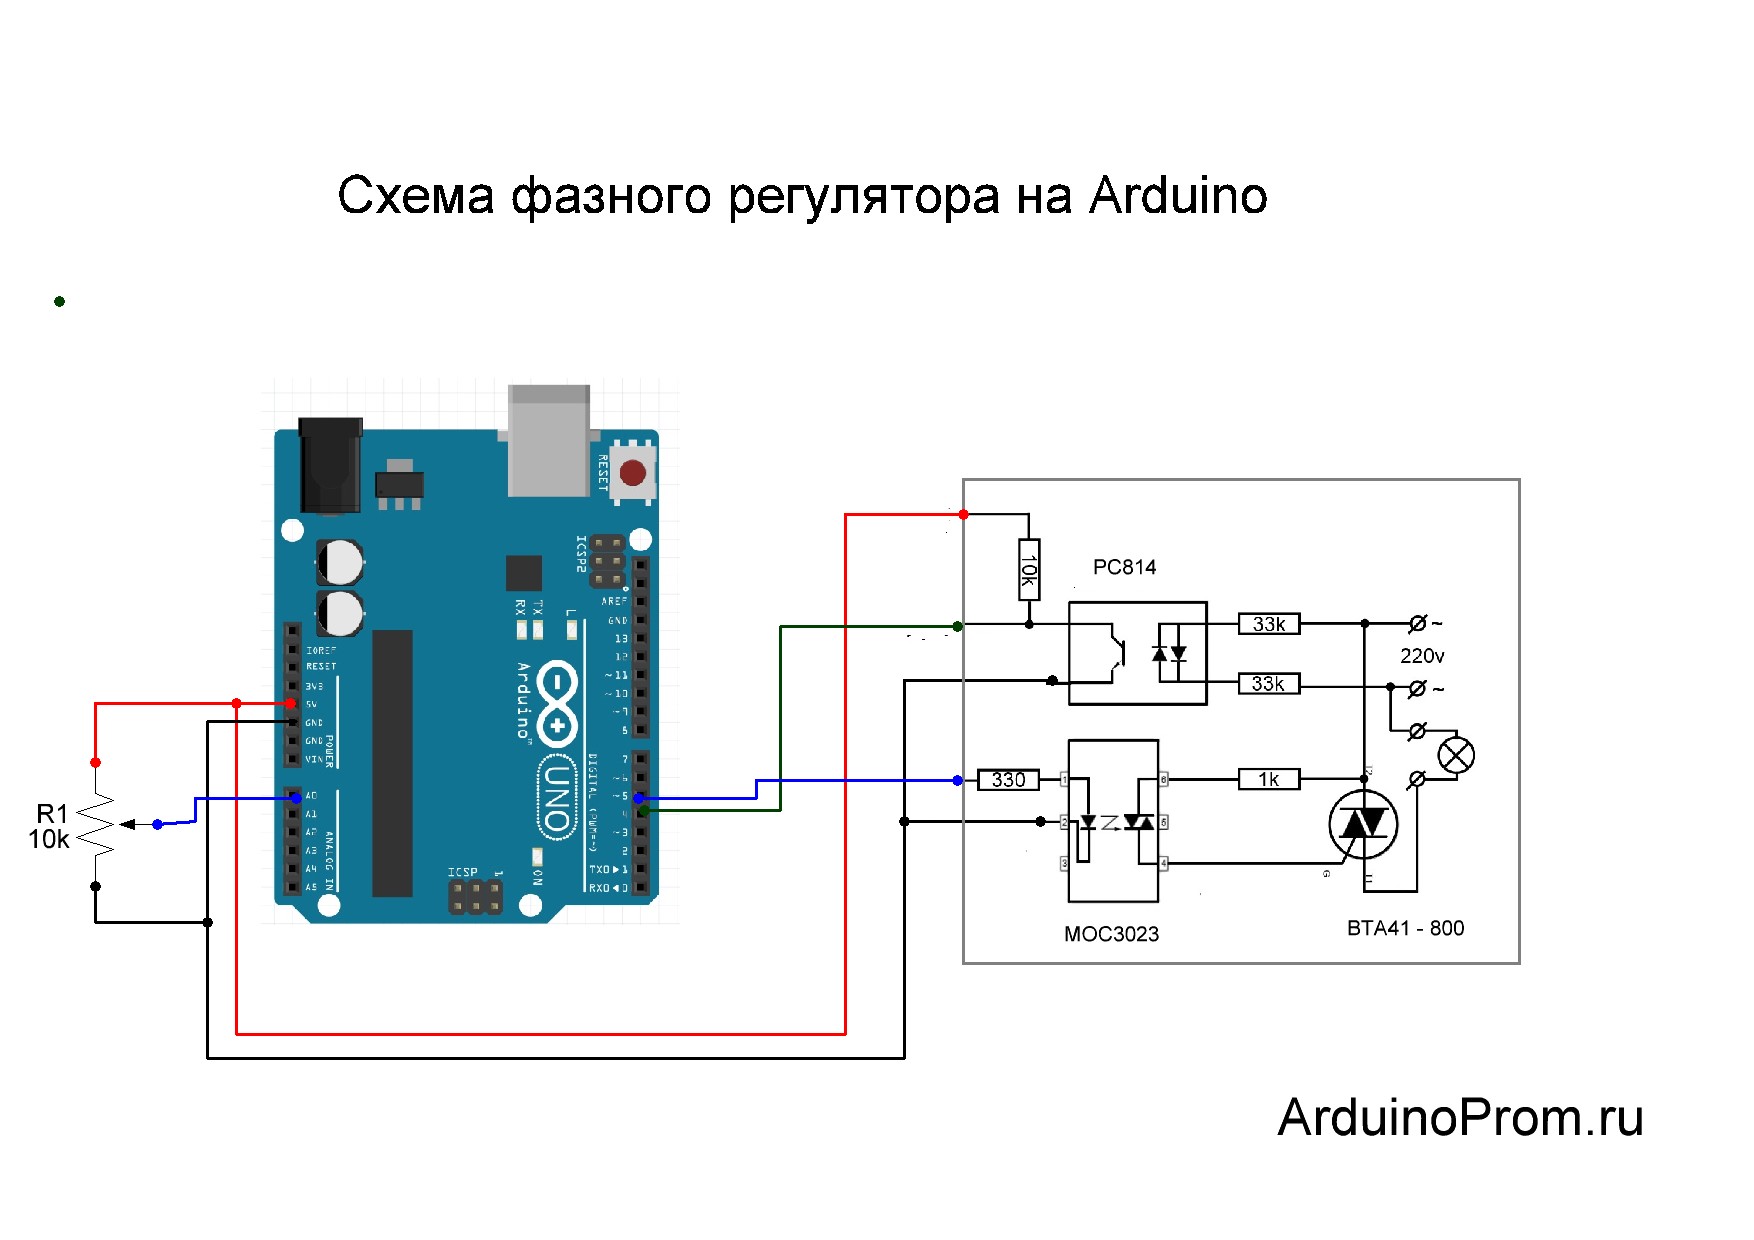 Фазное регулирование нагрузки переменного тока при помощи Arduino